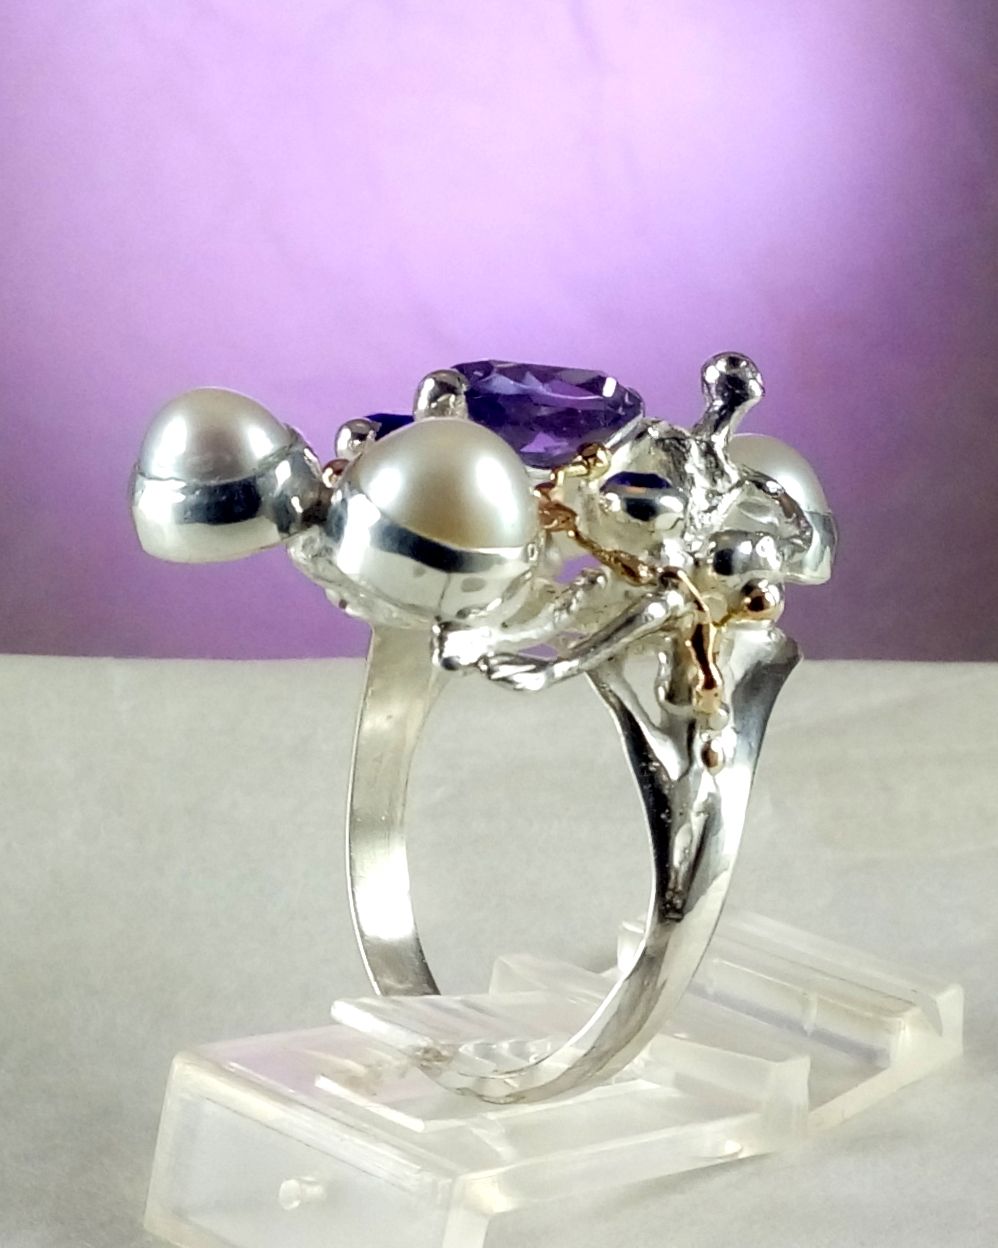 gregory pyra piro skulpturel ring 8070, smykker sælges i kunstgallerier, smykker sælges i håndværkergallerier, håndlavede ametyst smykker, håndlavede perlesmykker, smykker ingen andre har, skulpturelle smykker, håndlavet ametyst og perle ring